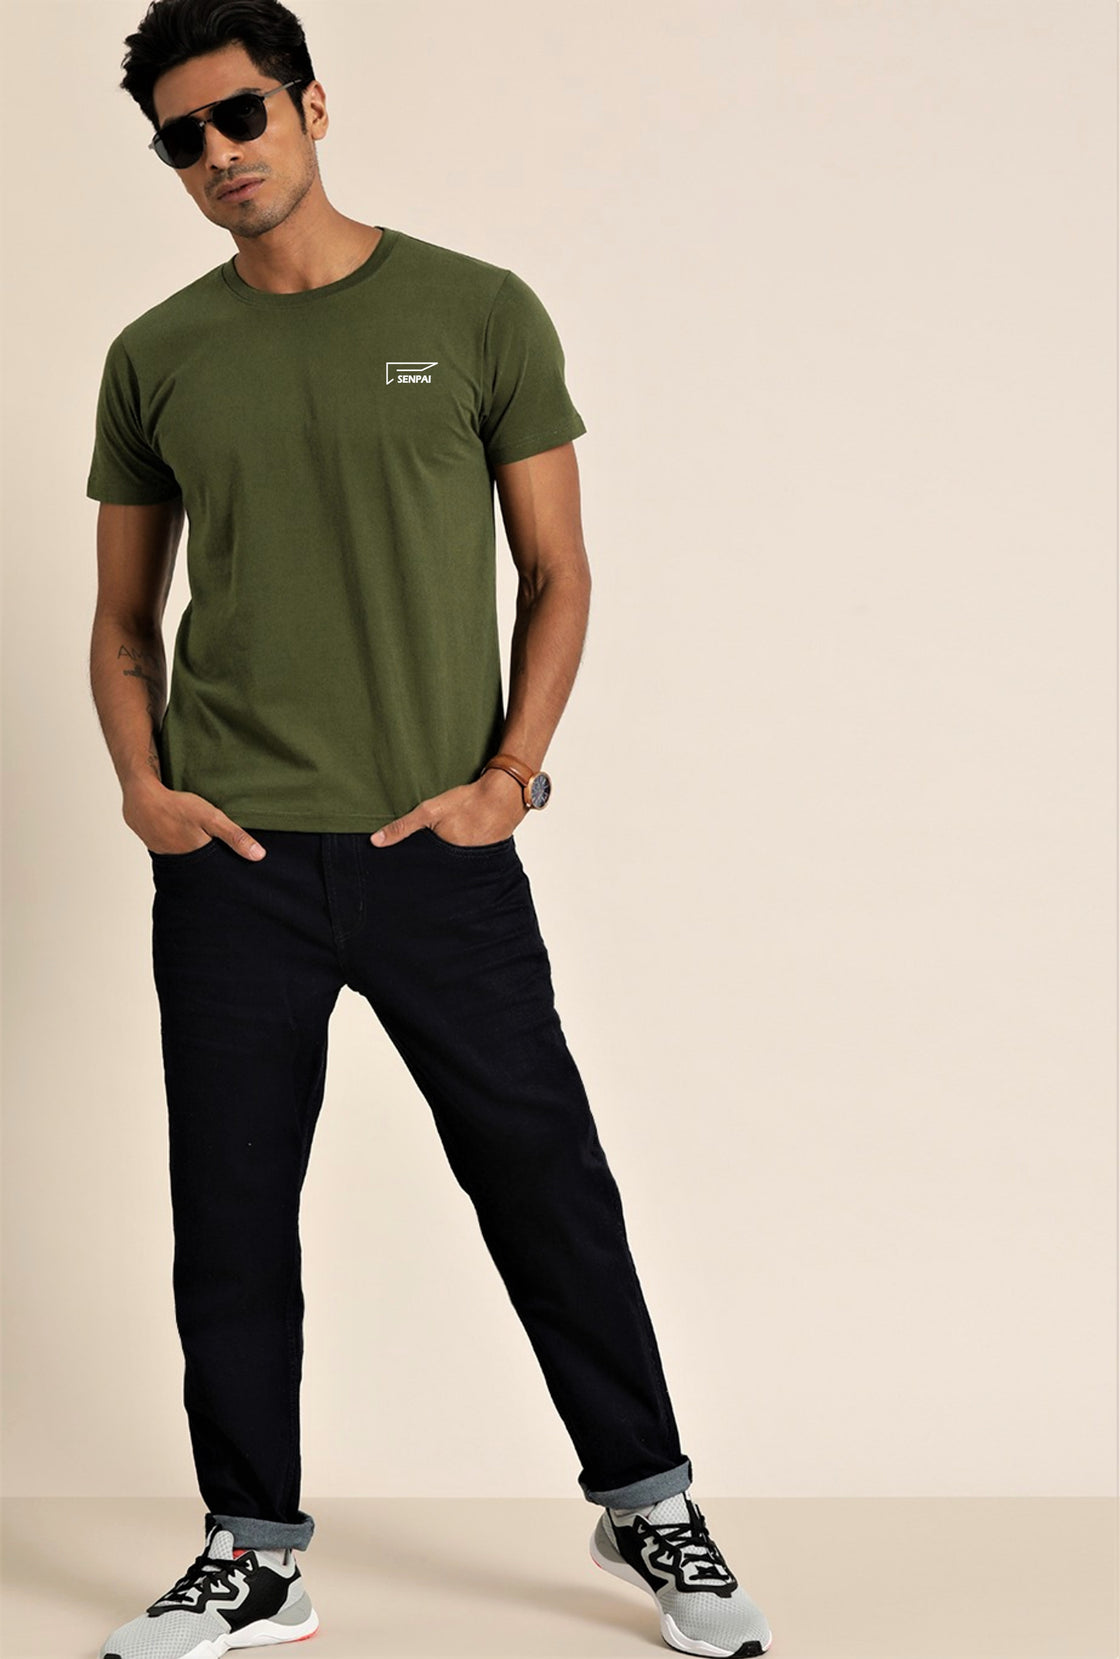 Men’s Sports Wear Round Neck Green T-Shirt